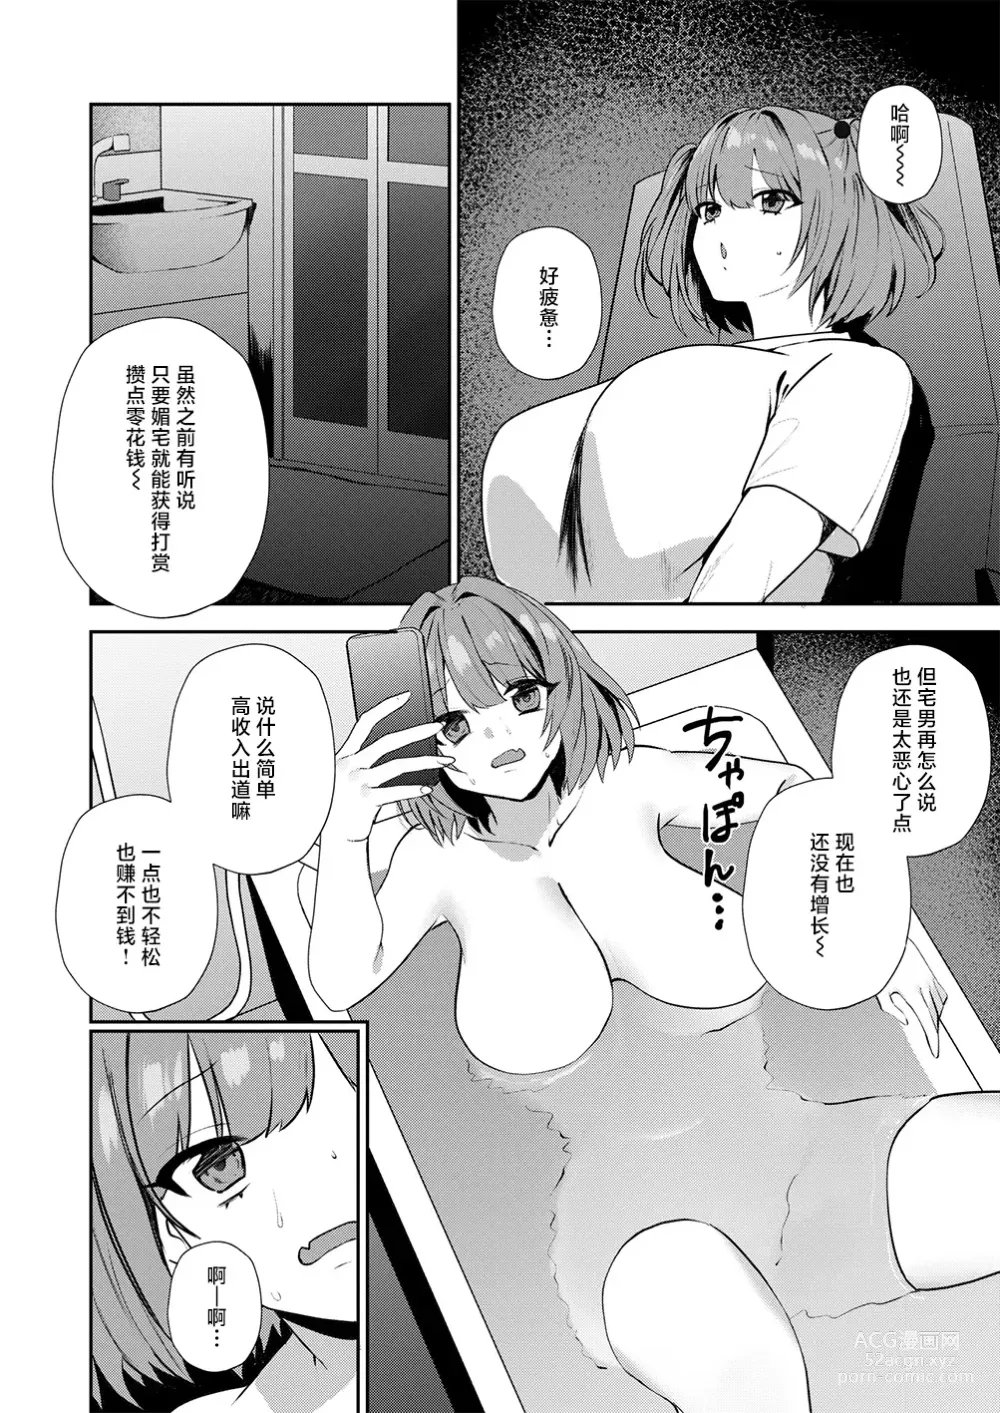 Page 2 of manga Motto Atashi o Oshite kure!